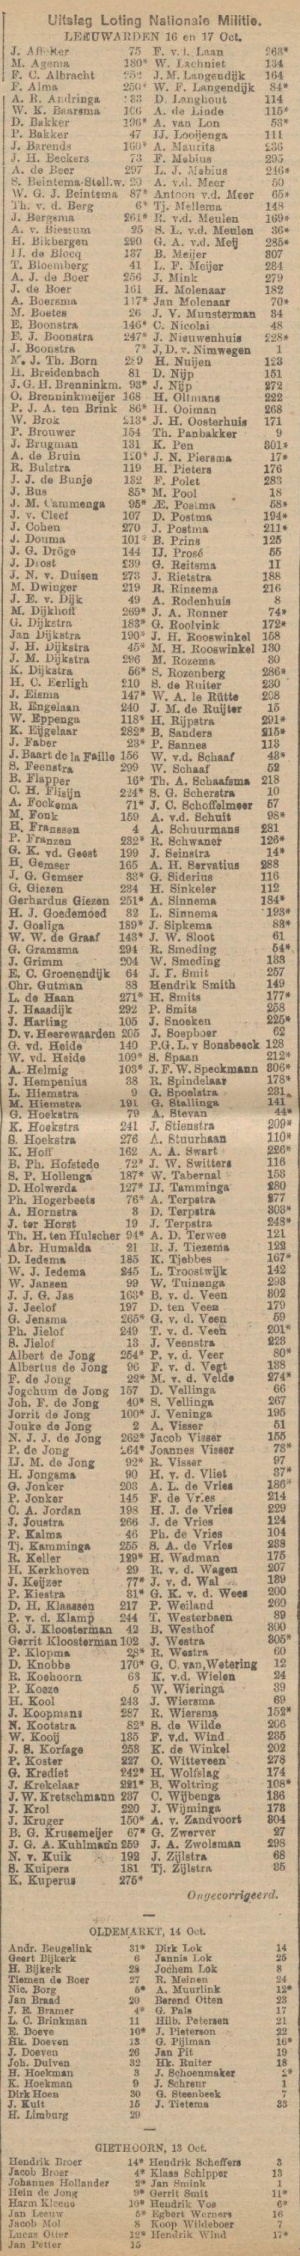 Nieuwsblad van Friesland, 18-10-1905